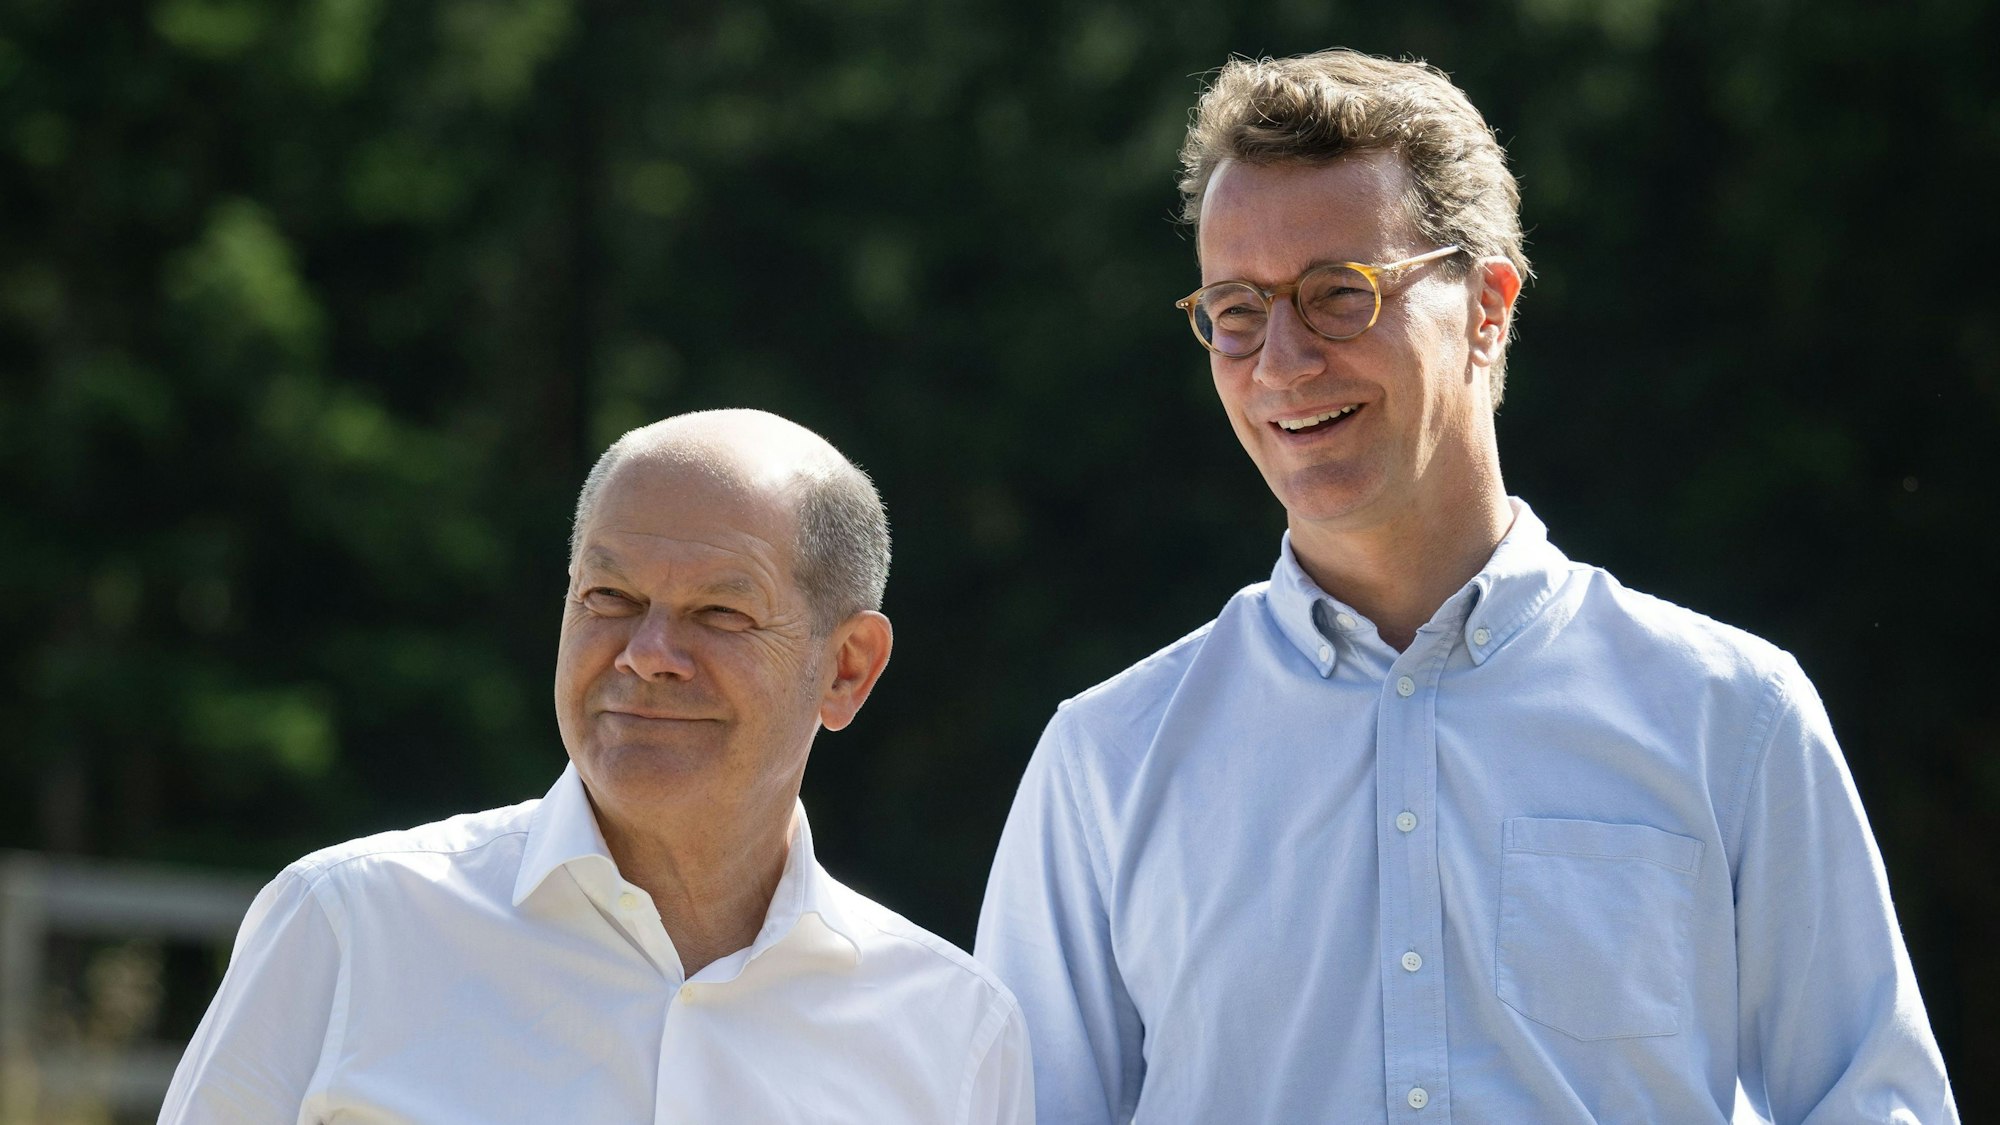 Bundeskanzler Olaf Scholz (SPD, l) und Hendrik Wüst, Ministerpräsident von Nordrhein-Westfalen (CDU) stehen bei einem Besuch eines Bürgerwindparks nebeneinander.